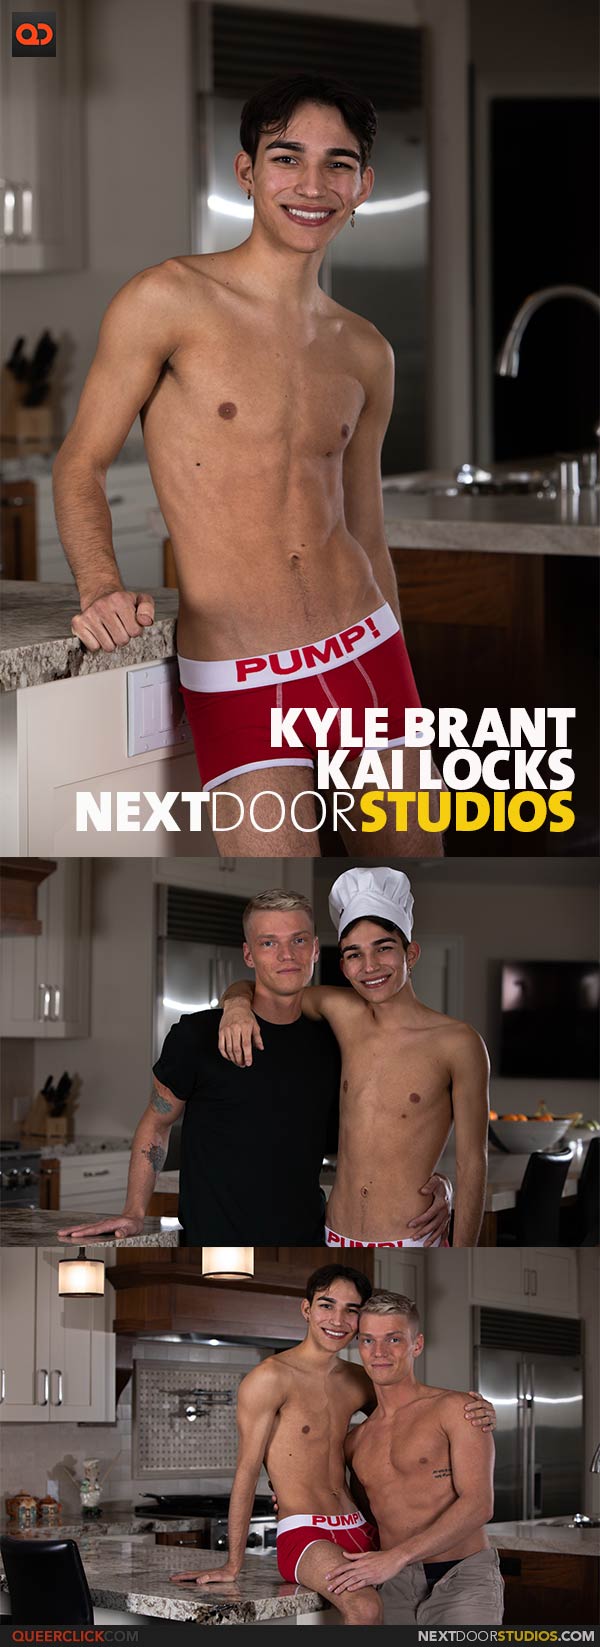 NextDoorStudios: Kai Locks and Kyle Brant